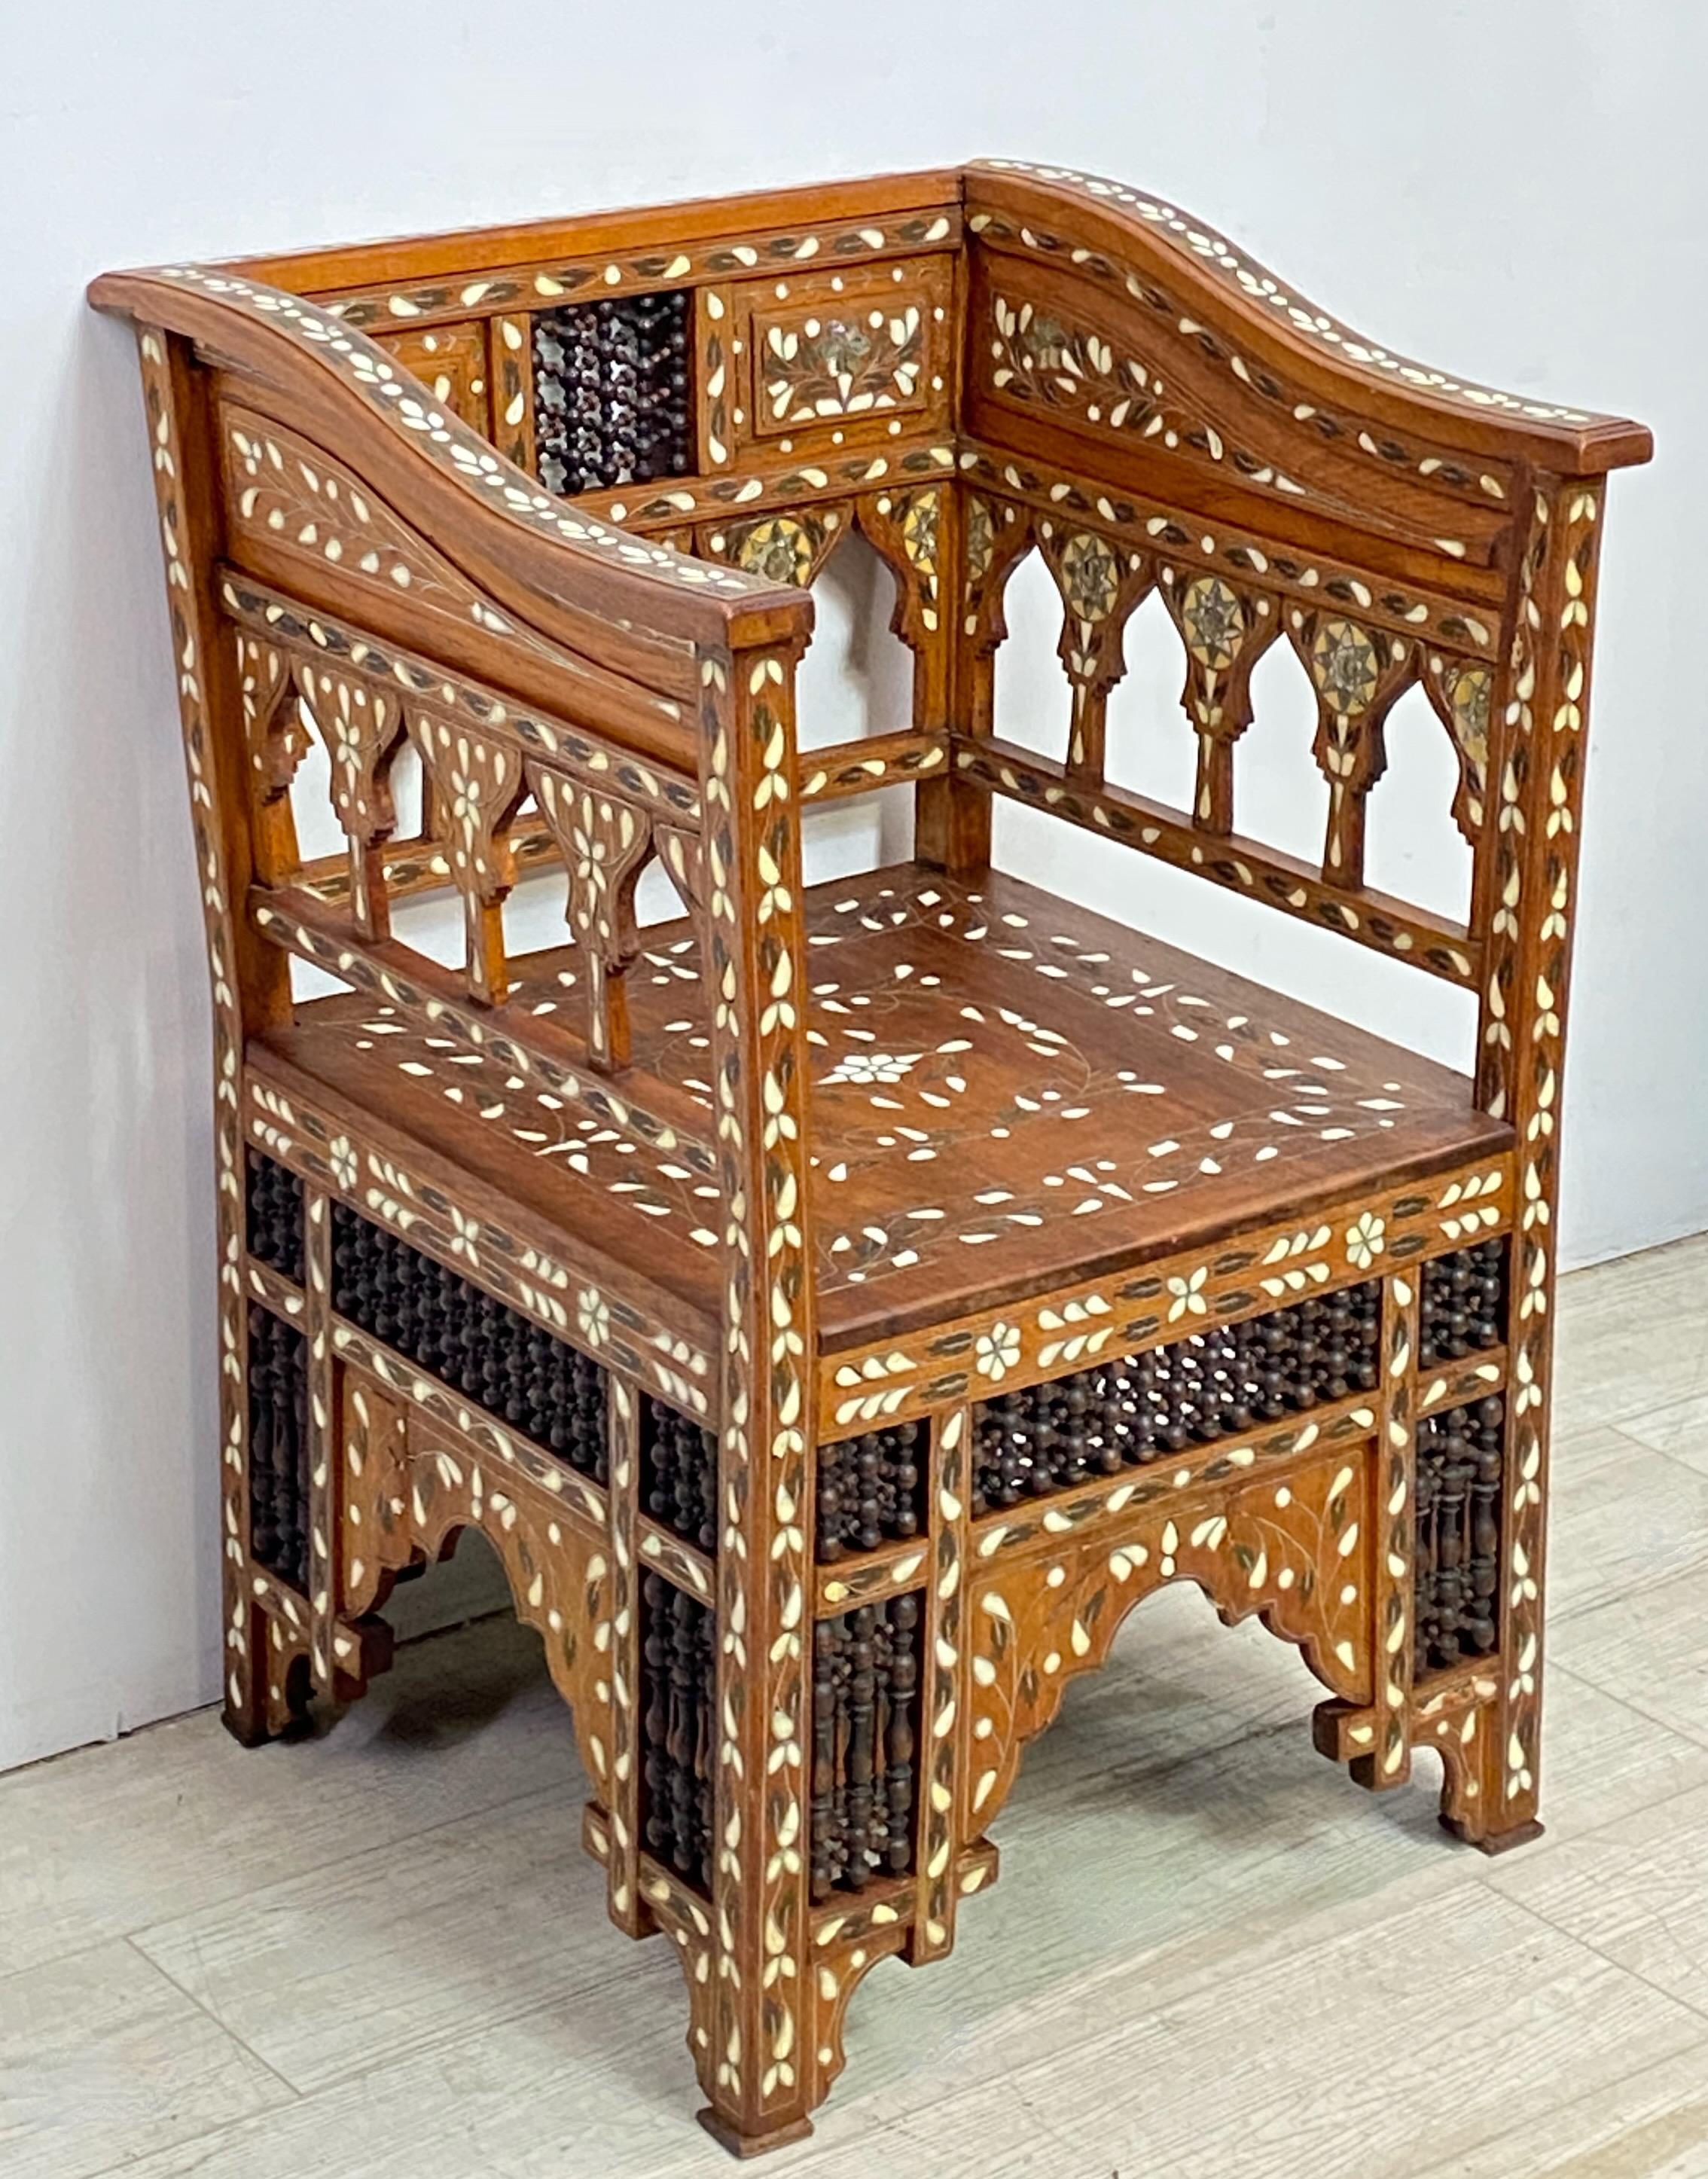 Ein sehr dekoratives Beispiel für einen handgeschnitzten syrischen Sessel im maurischen Stil des späten 19. / frühen 20. Jahrhunderts mit Samt und applizierten Kissen. Nussbaumholz mit handgedrechselten Laubsägearbeiten und aufwendigen